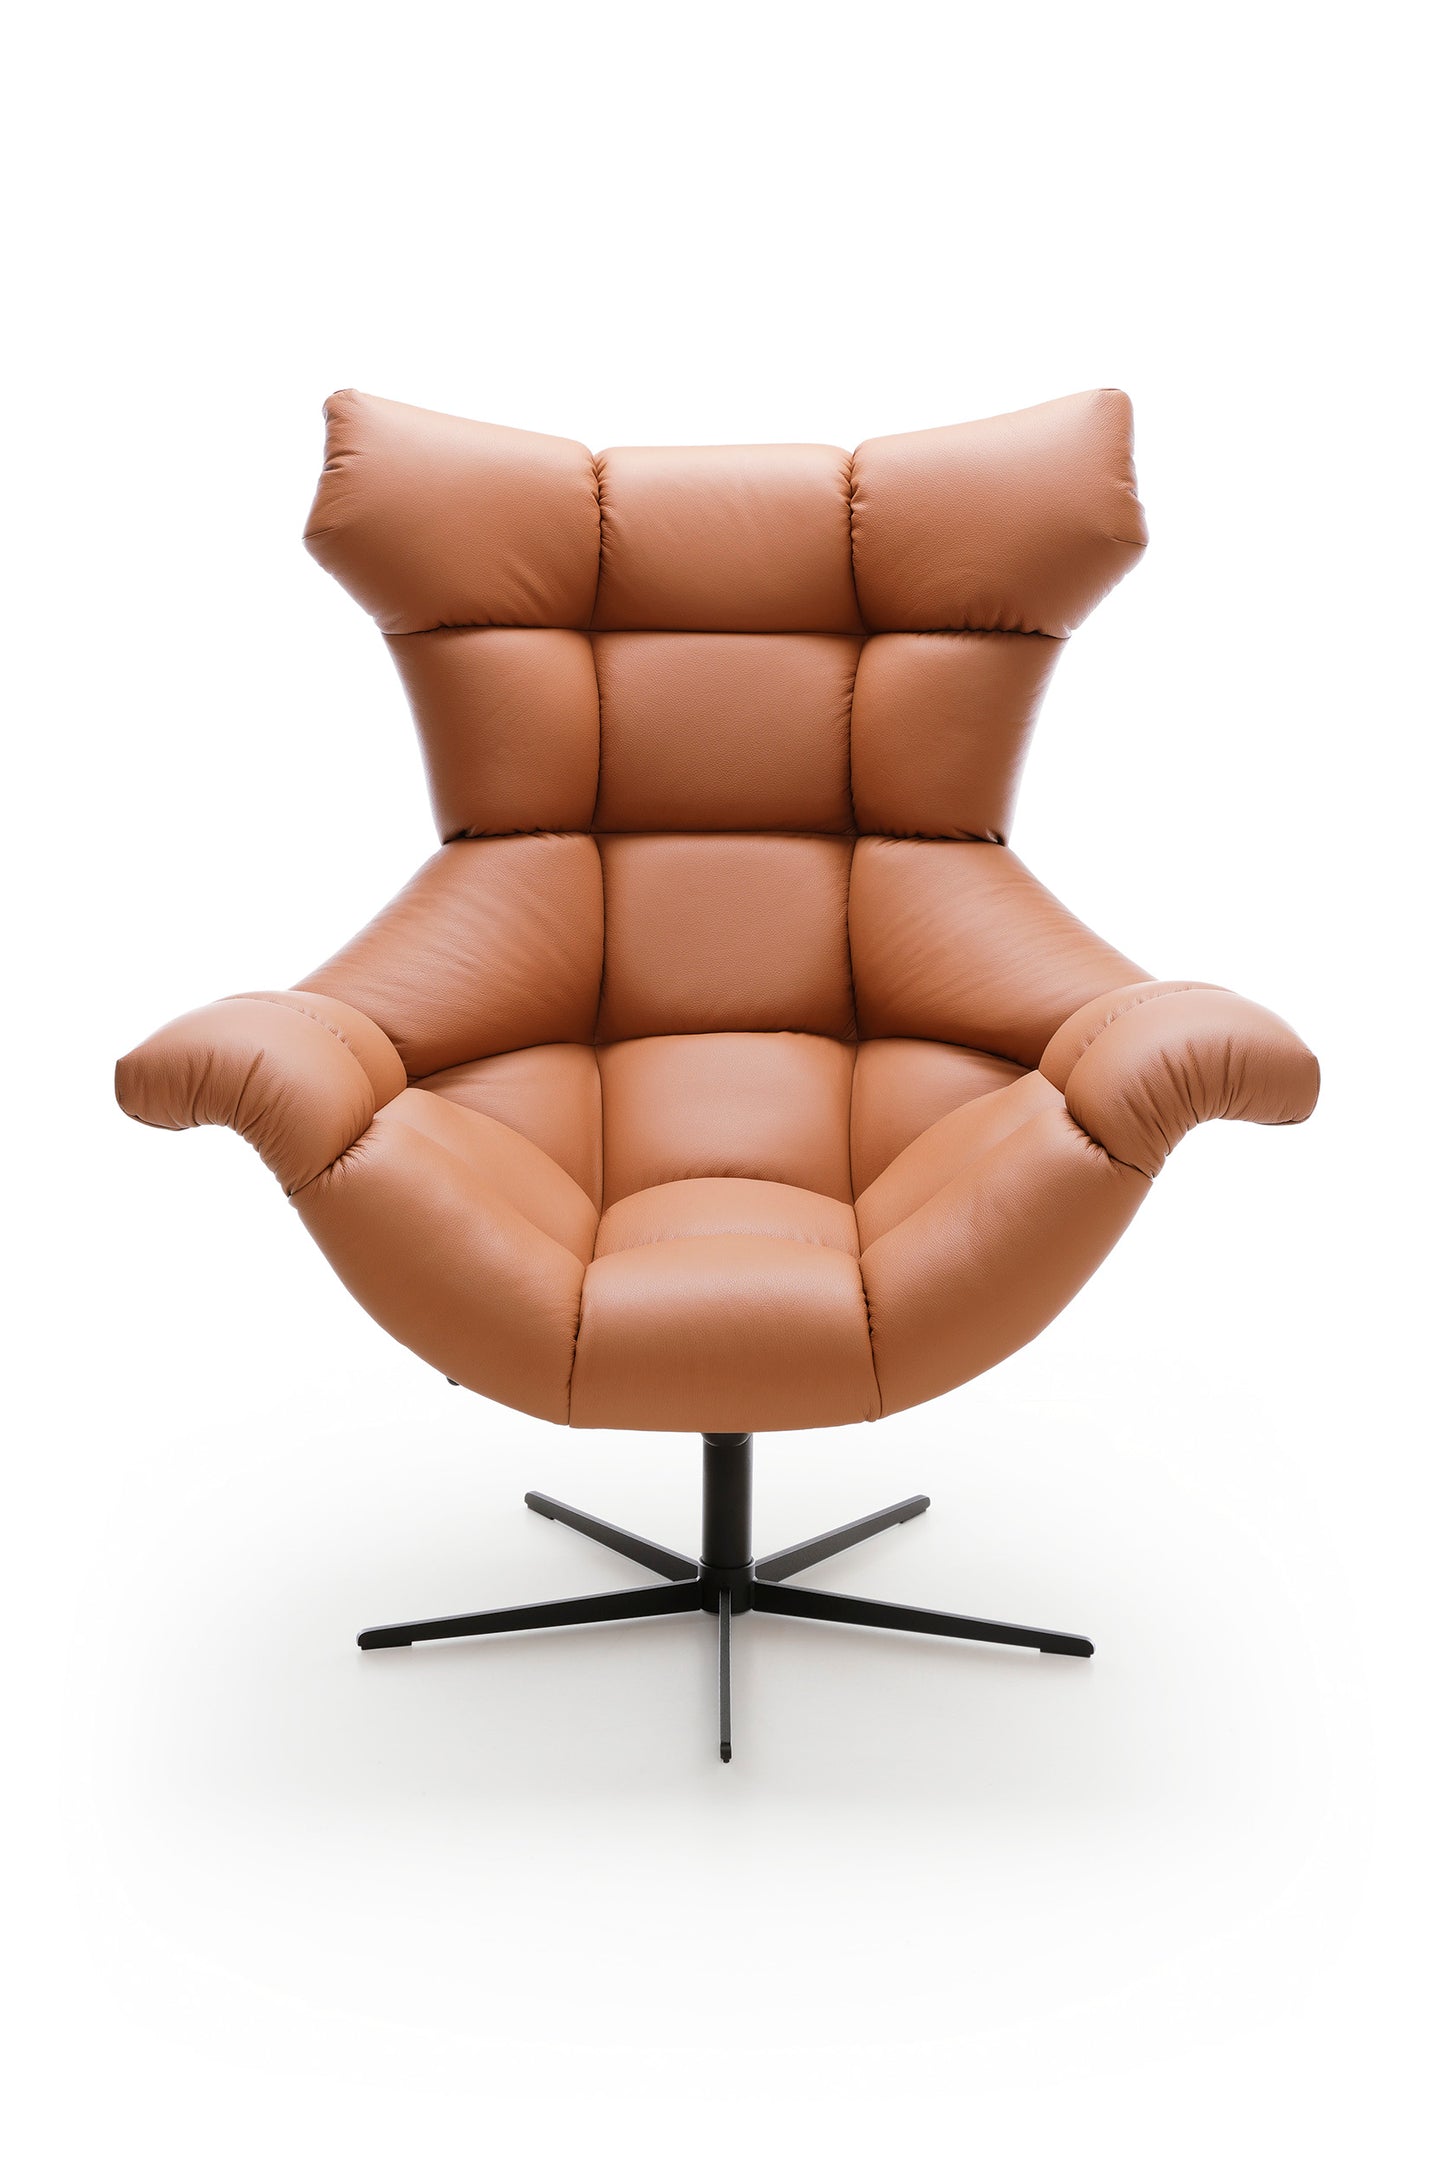 Zdjęcie przedstawiające nowoczesny fotel skórzany Sensi z czarną metalową nogą. Skóra z metalem to wysokiej jakości materiały, które pozwolą skorzystać z fotela Sensi przez wiele lat.